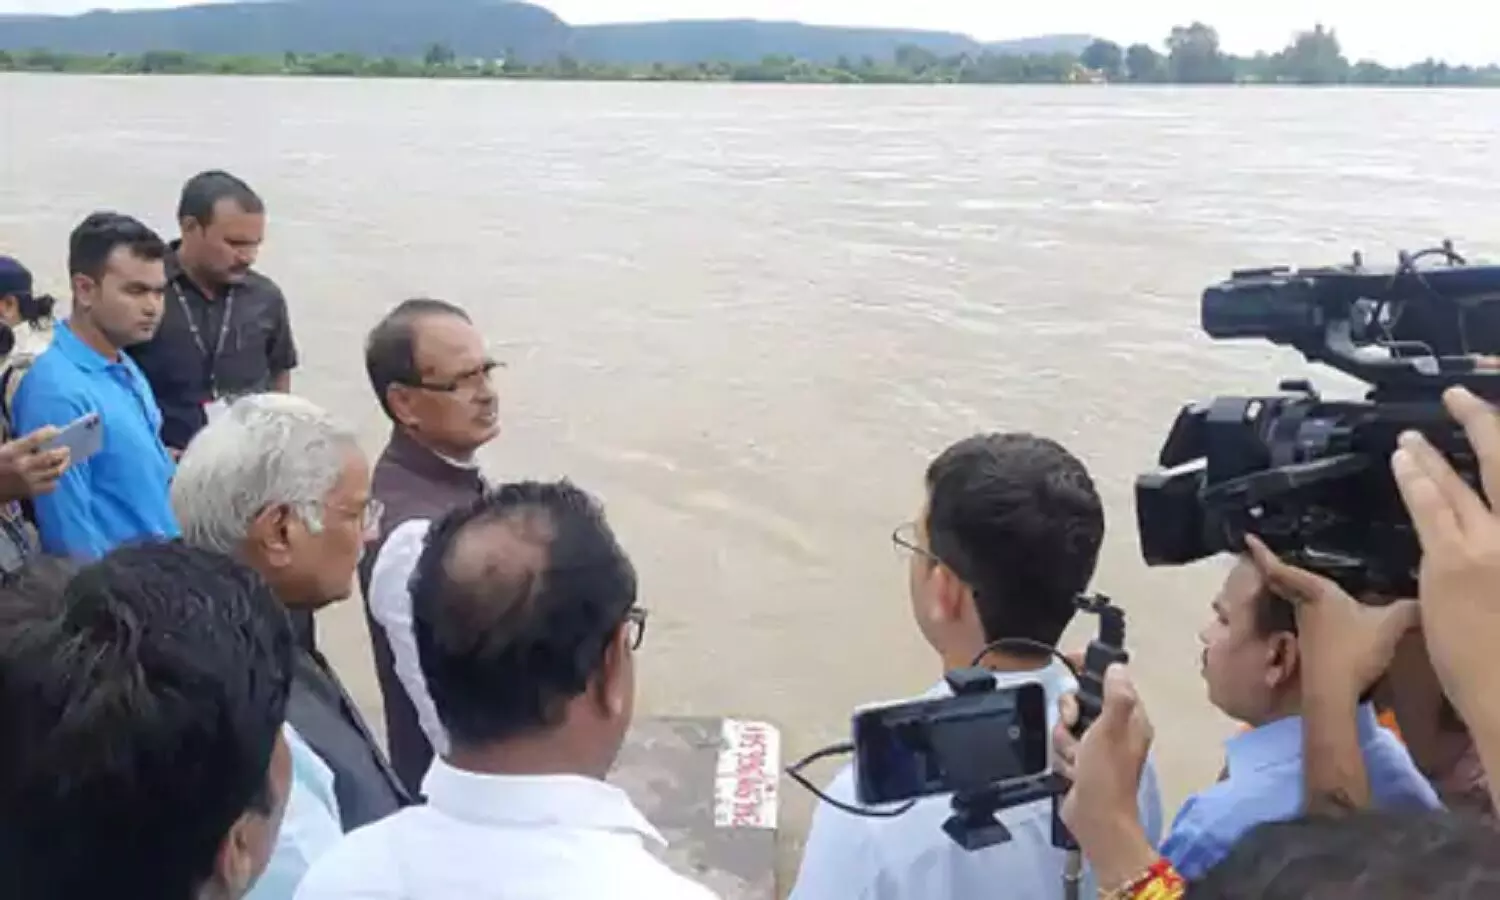 MP Flood Alert: एमपी में नदियां उफान पर, इन जिलों में बाढ़ का अलर्ट, मुख्यमंत्री ने लिया जायजा